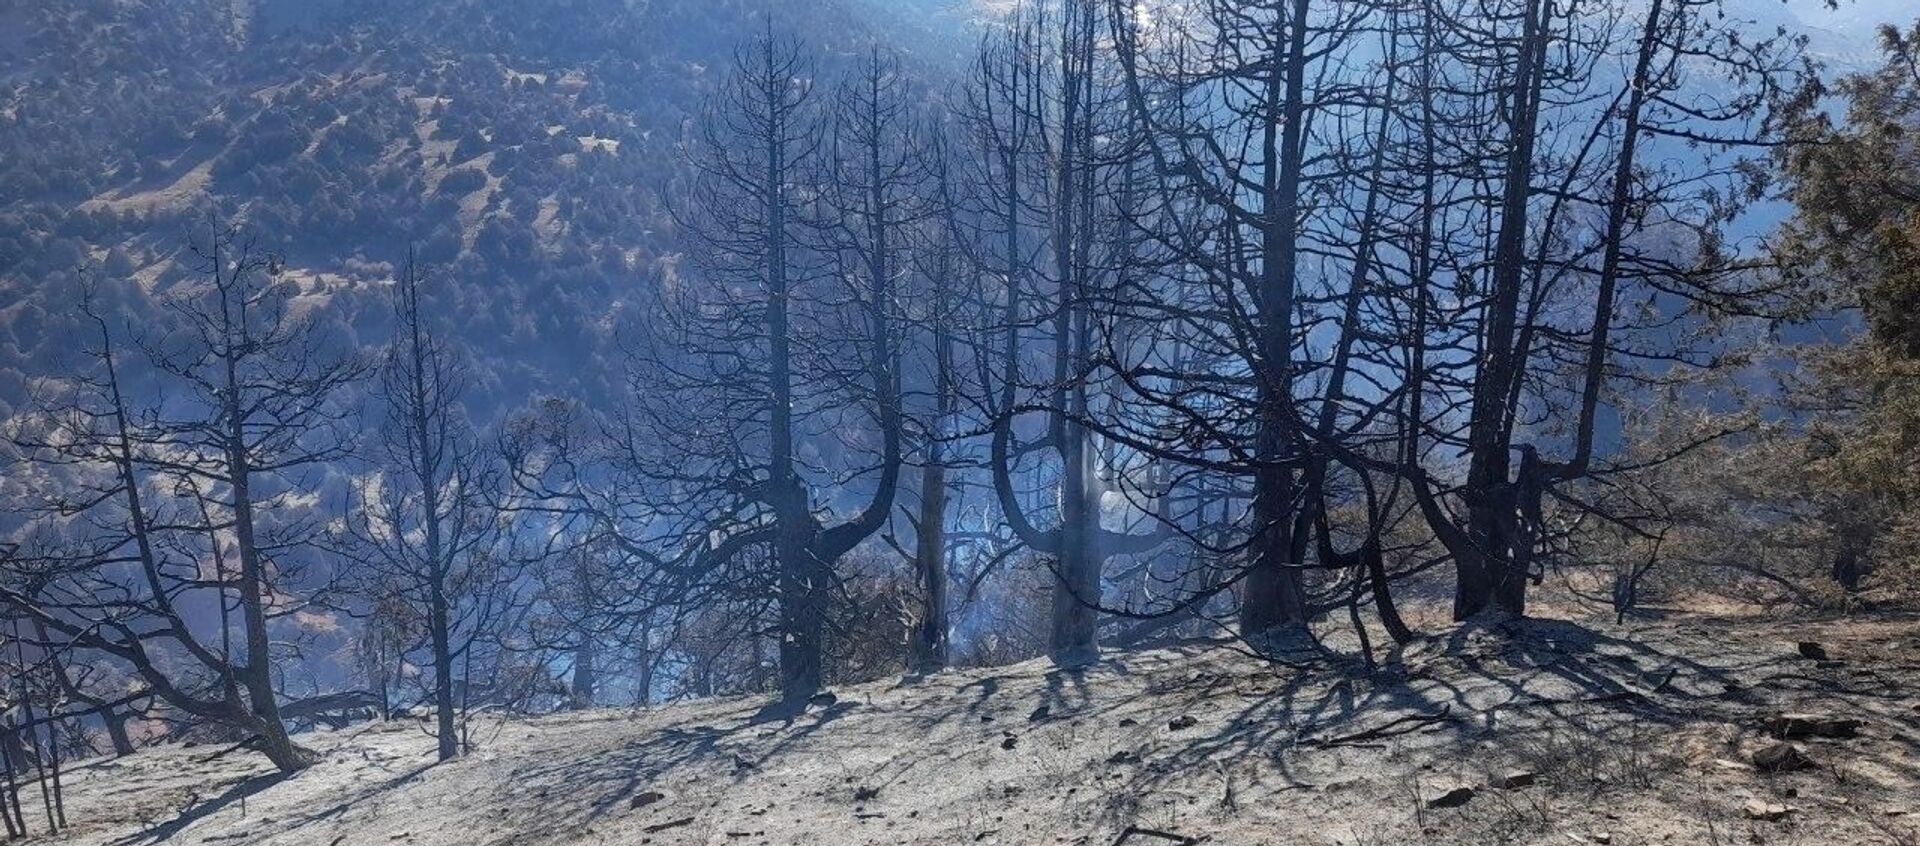 Лесные пожары в Кашкадарьинской области - Sputnik Узбекистан, 1920, 05.11.2020